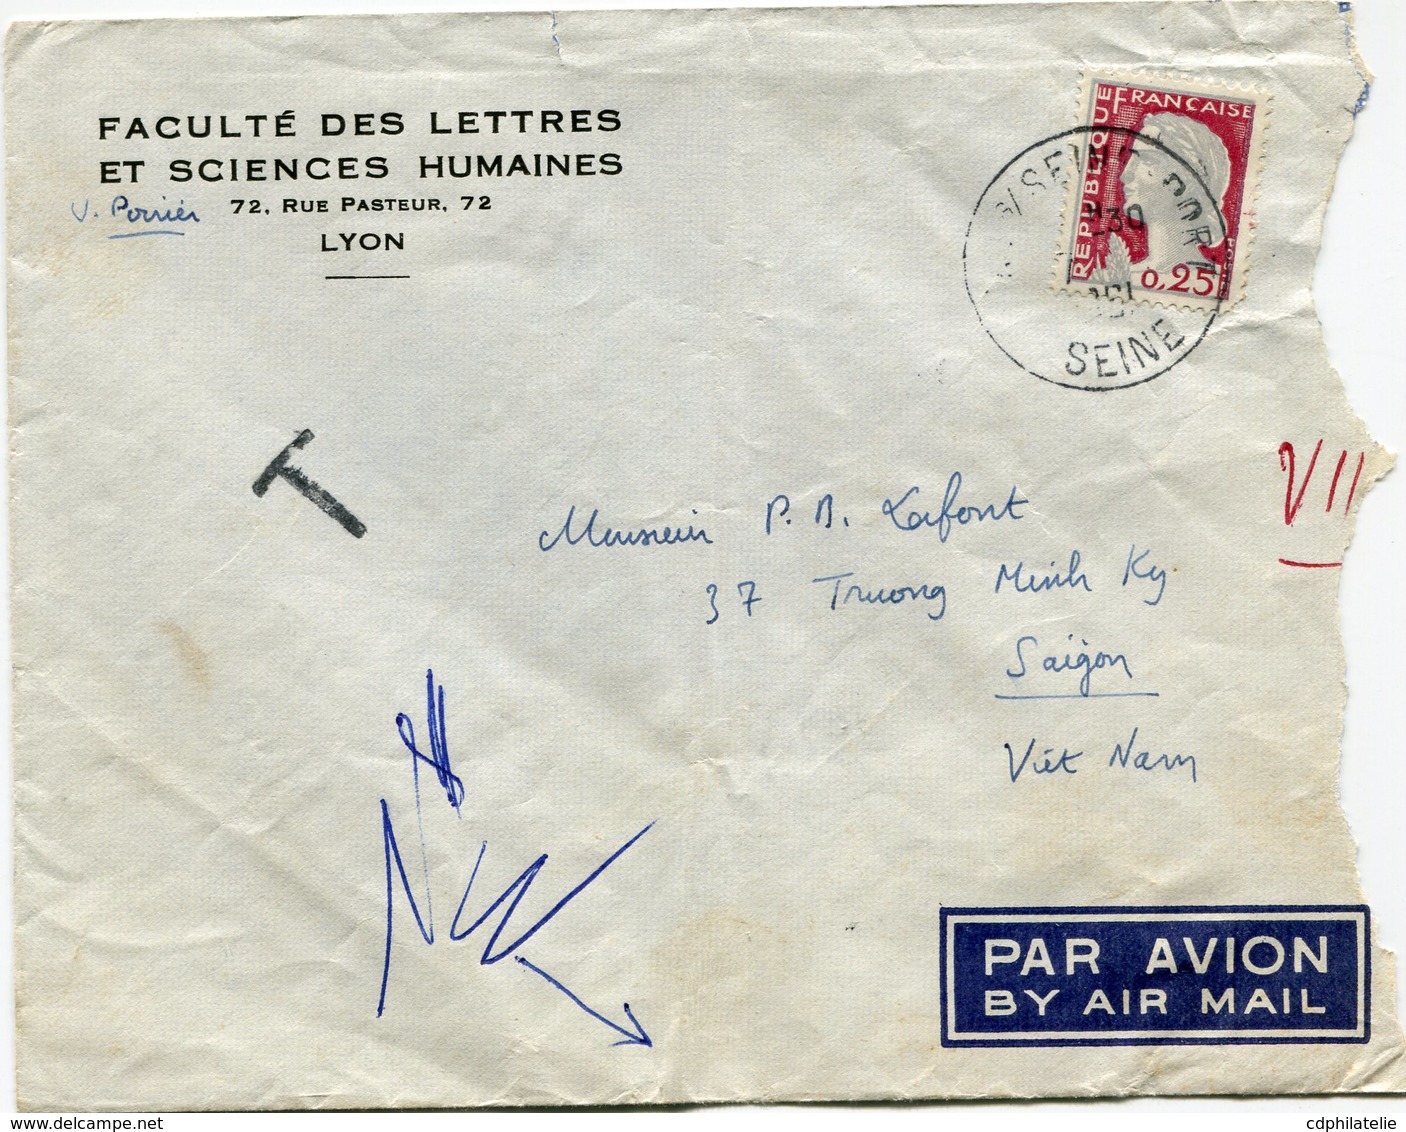 FRANCE LETTRE PAR AVION DEPART ? S/SEINE PORT ?-?-1961 SEINE TAXEE A L'ARRIVEE A SAIGON LE 11-?-1961 VIETNAM - 1960 Marianne Van Decaris